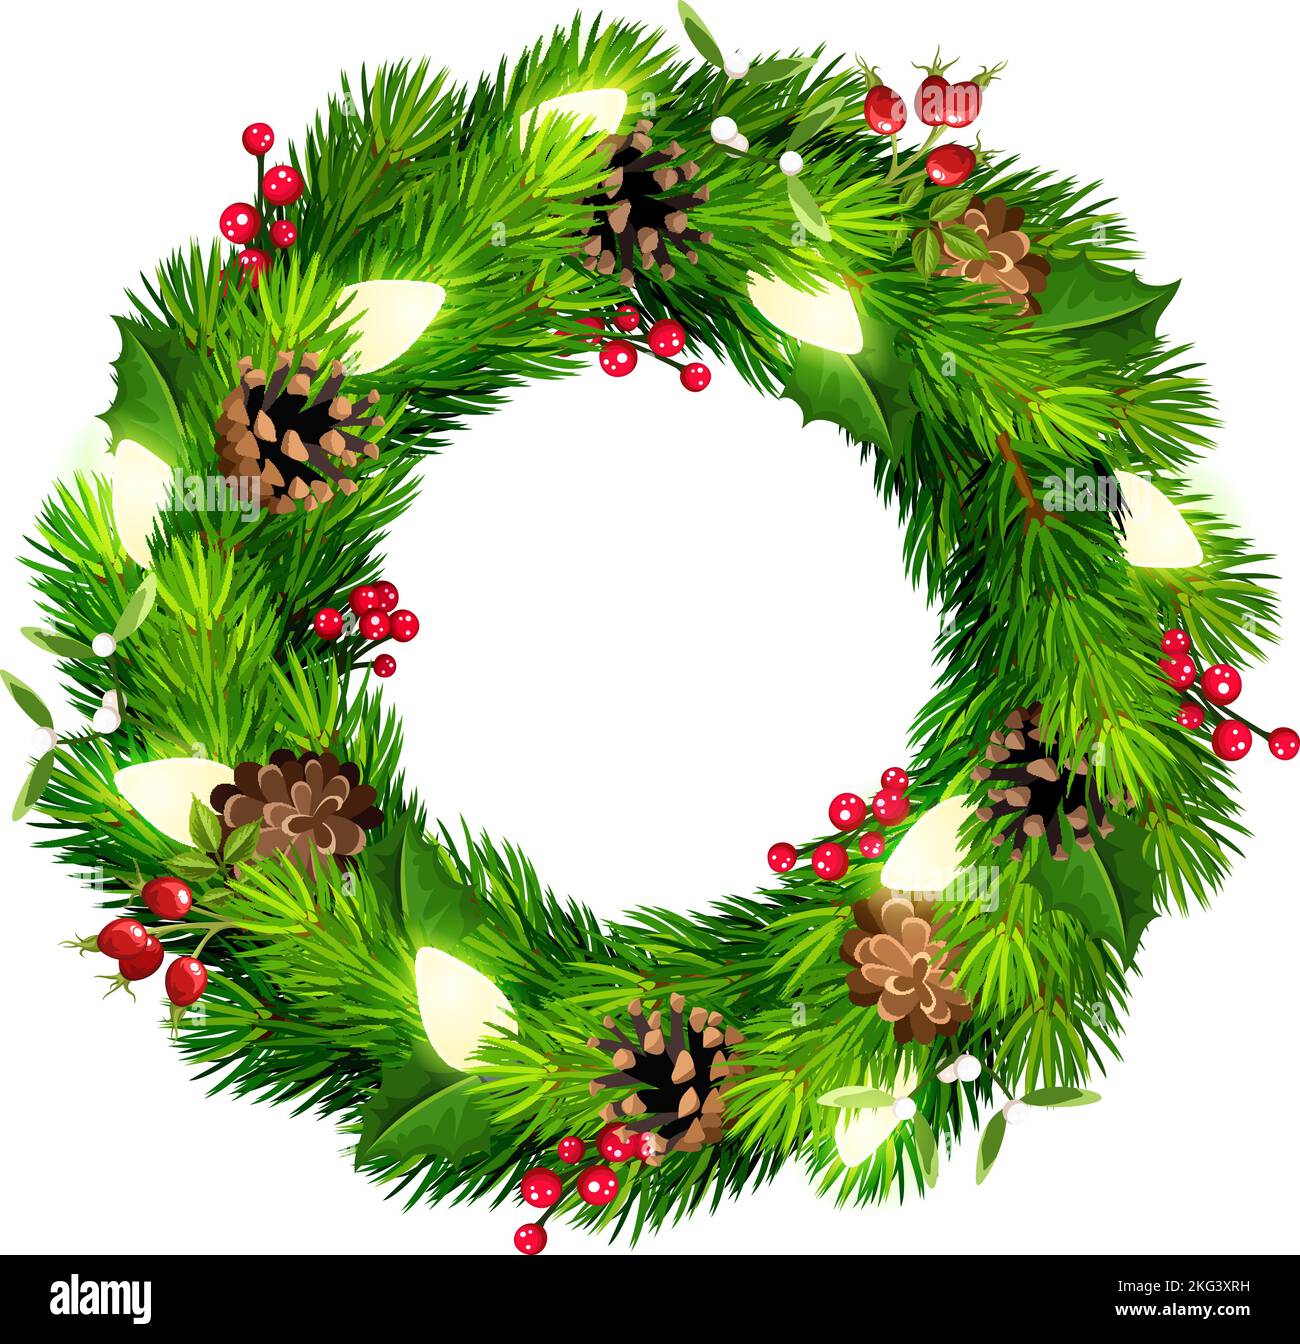 Corona de Navidad con ramas de abeto verde, conos de pino, luces de Navidad, acebo y muérdago. Ilustración vectorial Ilustración del Vector